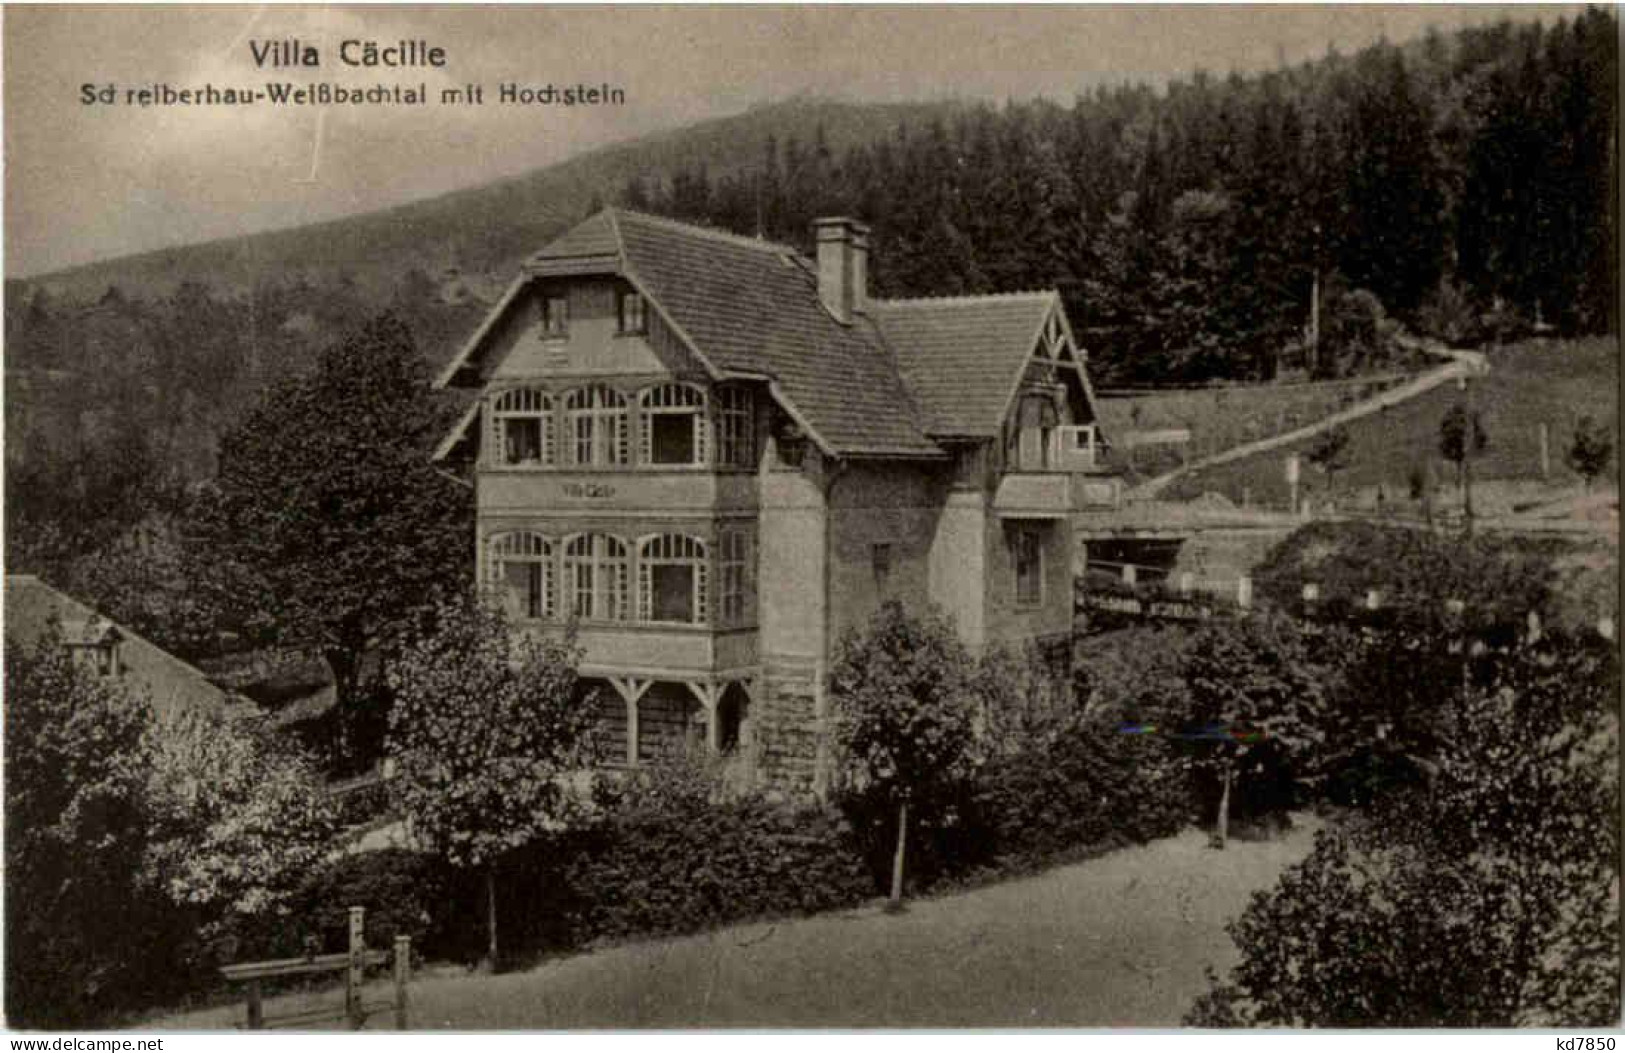 Schreiberhau-Weissbachtal - Villa Cäcille - Schlesien